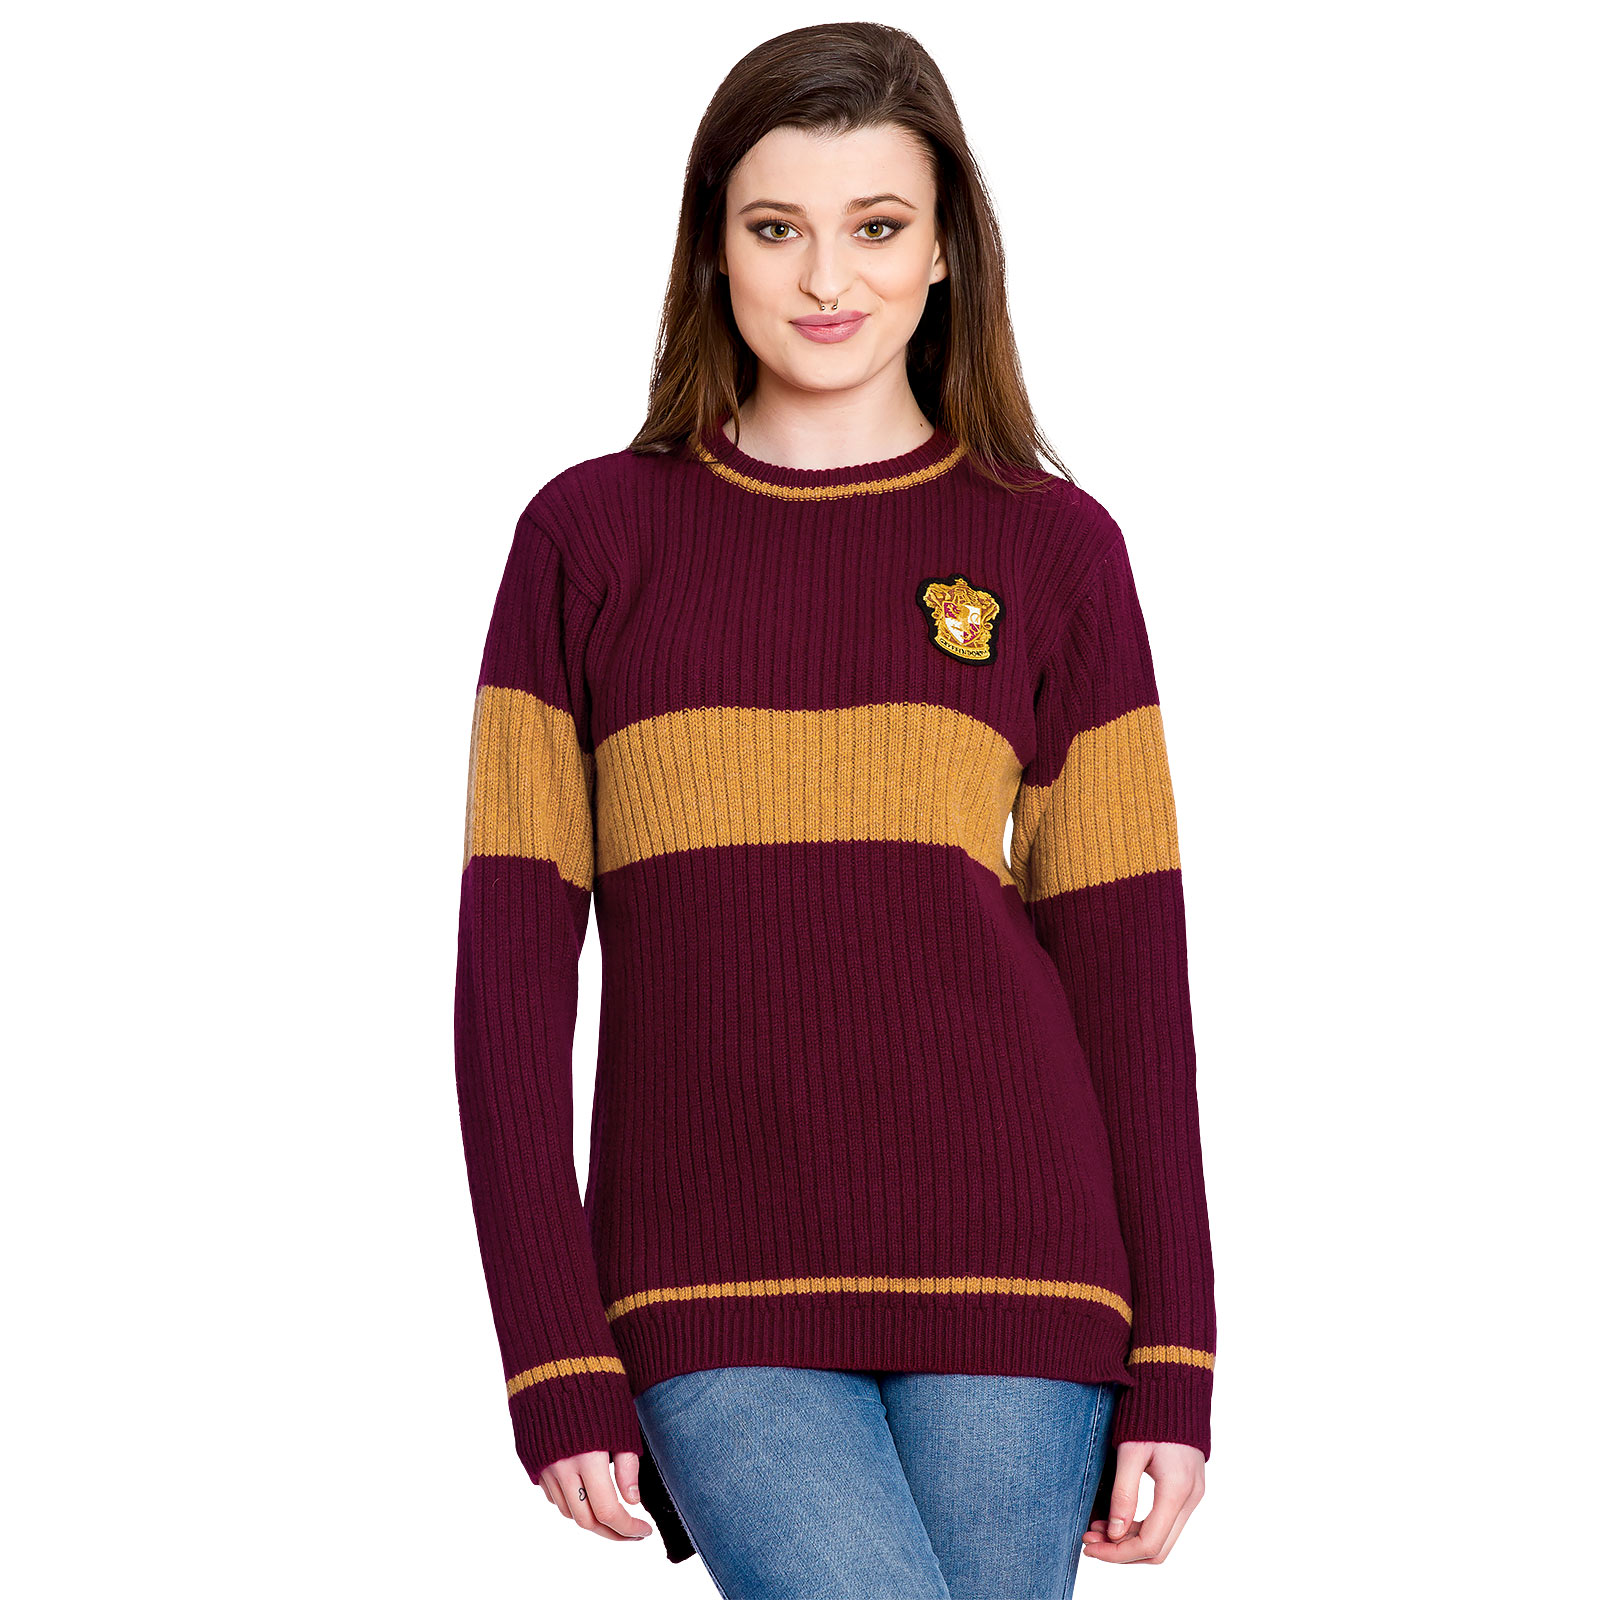 Harry Potter - Quidditch Gryffindor Sweater